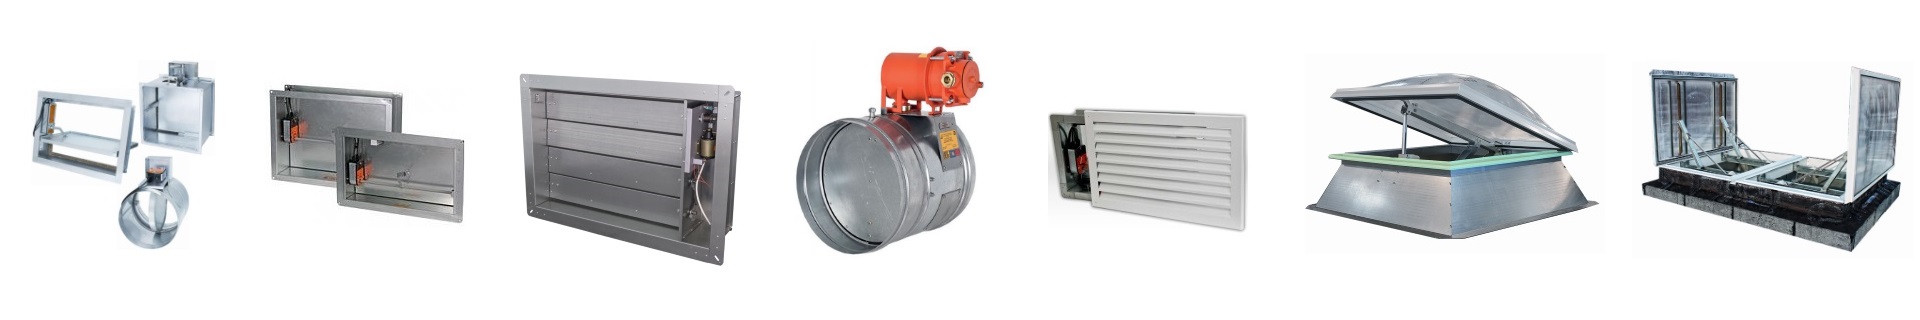 Противопожарные клапаны КЛОП для систем вентиляции купить огнезадерживающий клапан КЛОП